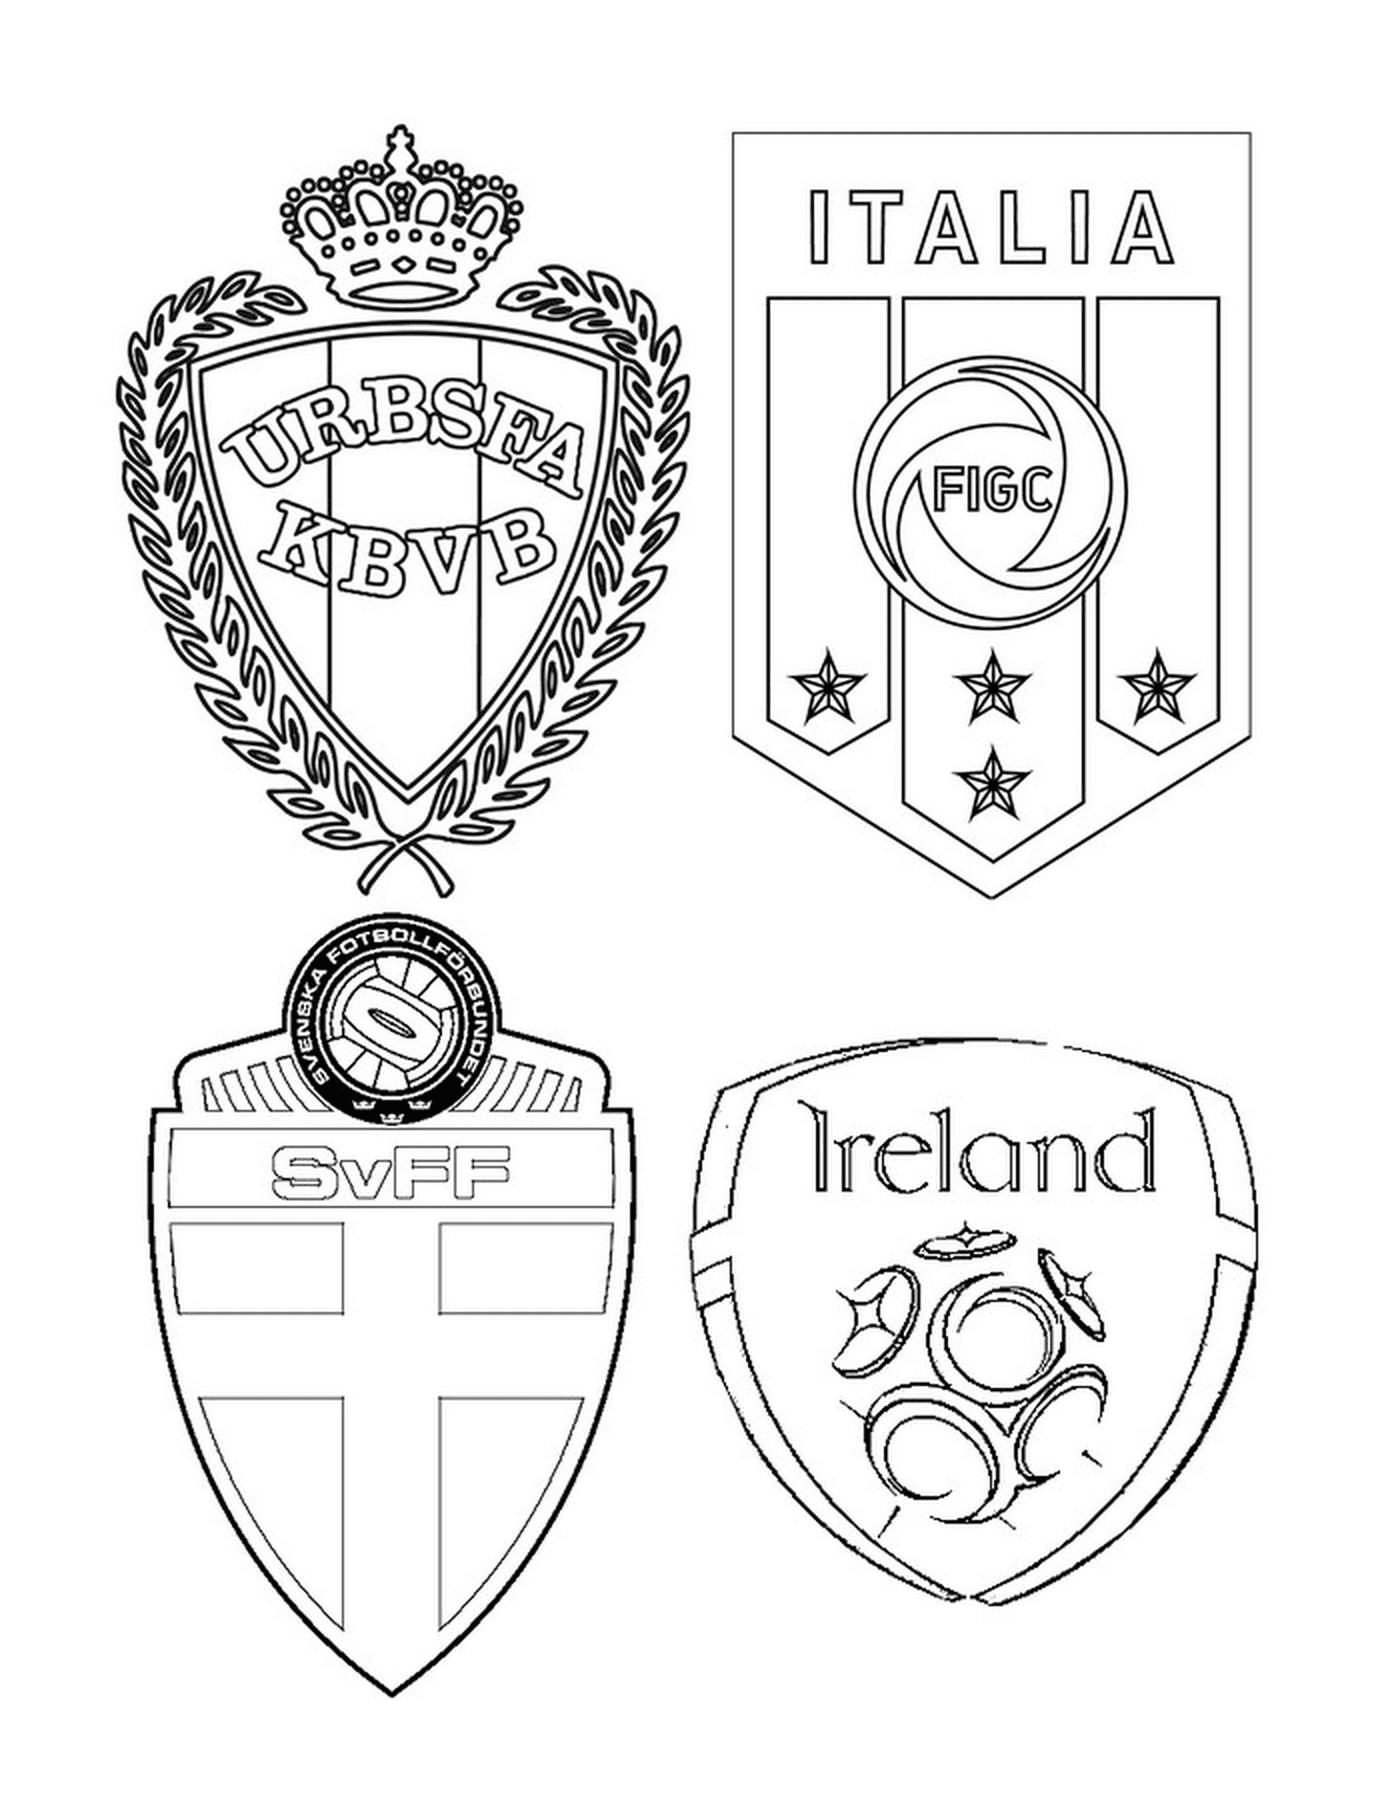  Vier Fußball-Team Logos mit verschiedenen Designs 